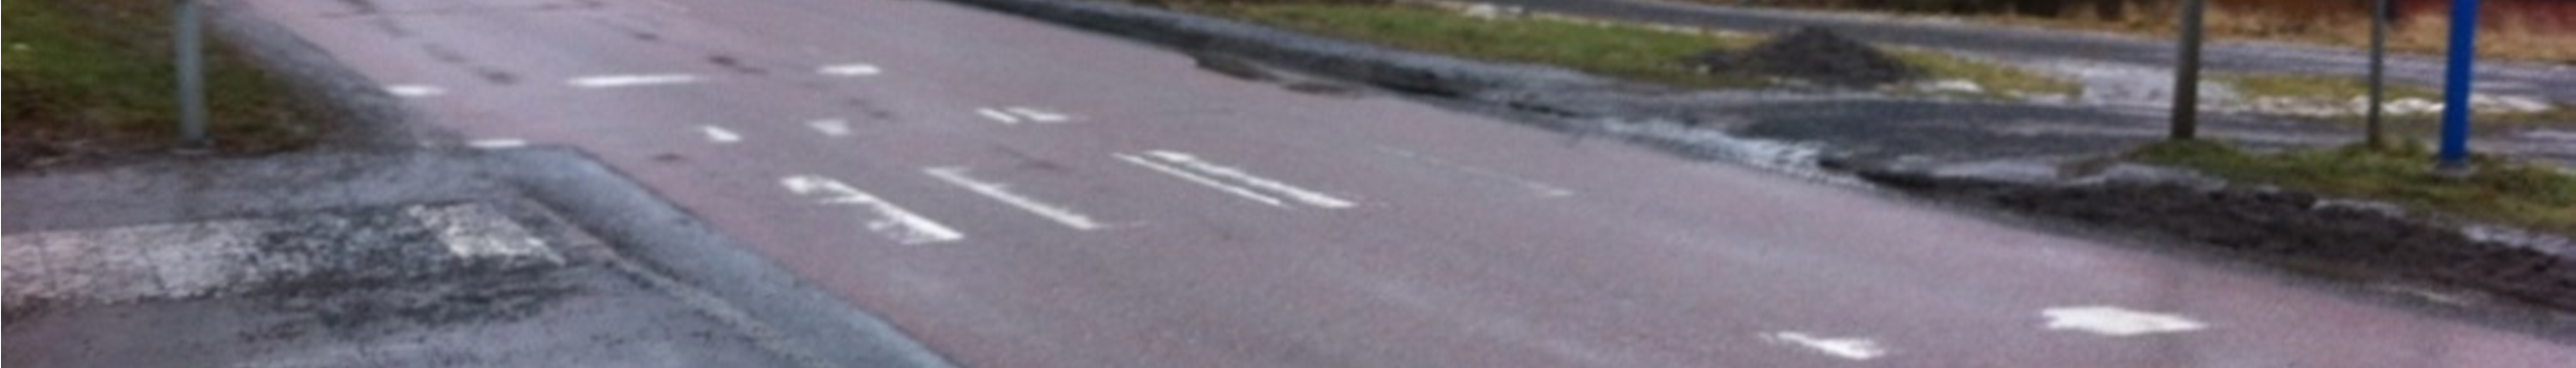 24(43) Bild 7. Övergångsställe över Stockholmsvägen vid Åkerbyvägen. Två rapporter anmärker på farligt signalreglerat övergångsställe över Bergtorpsvägen (P12) nära rondellen till Stora Marknadsvägen.